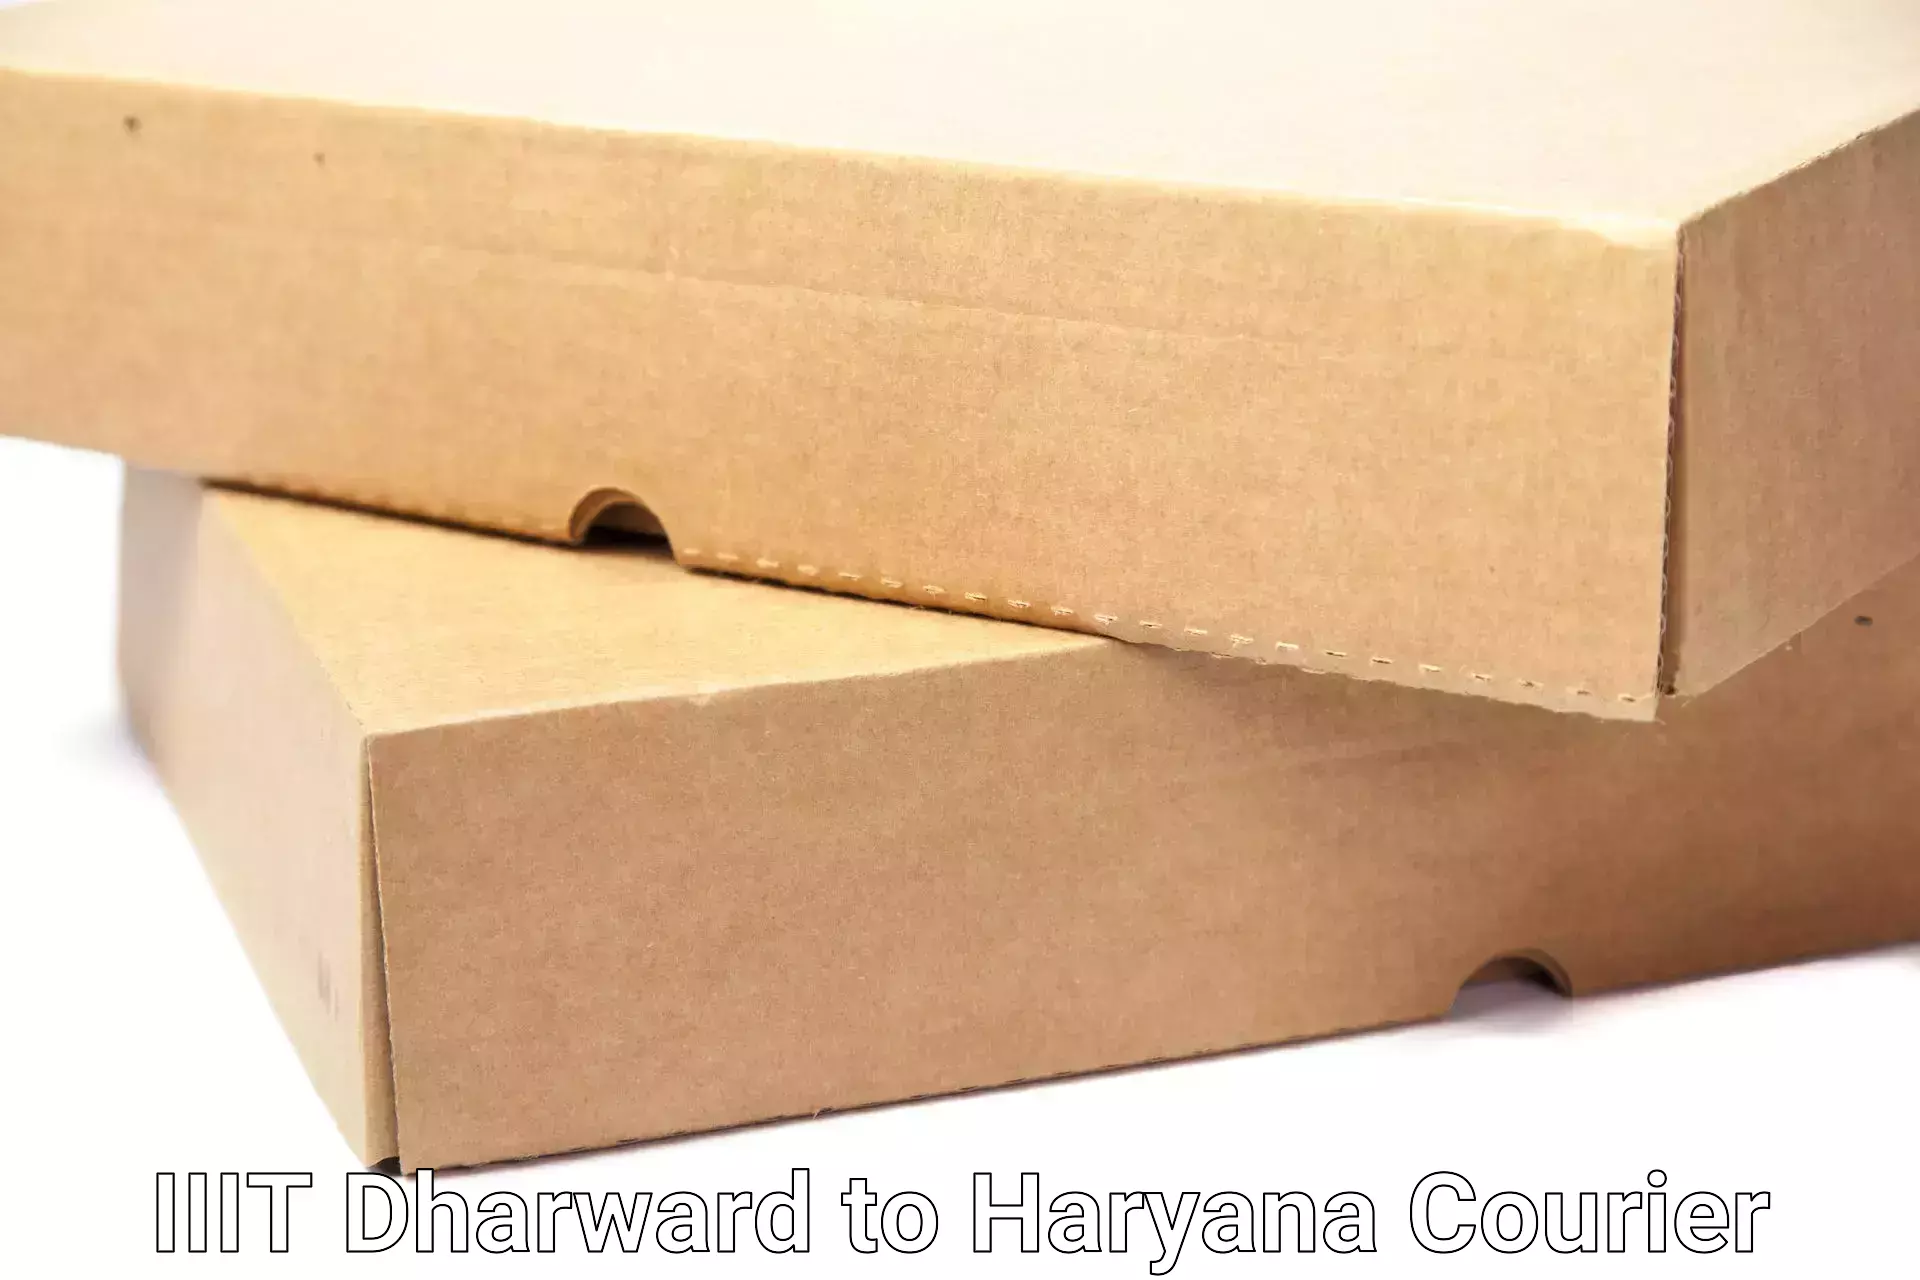 Professional moving strategies IIIT Dharward to Bhuna